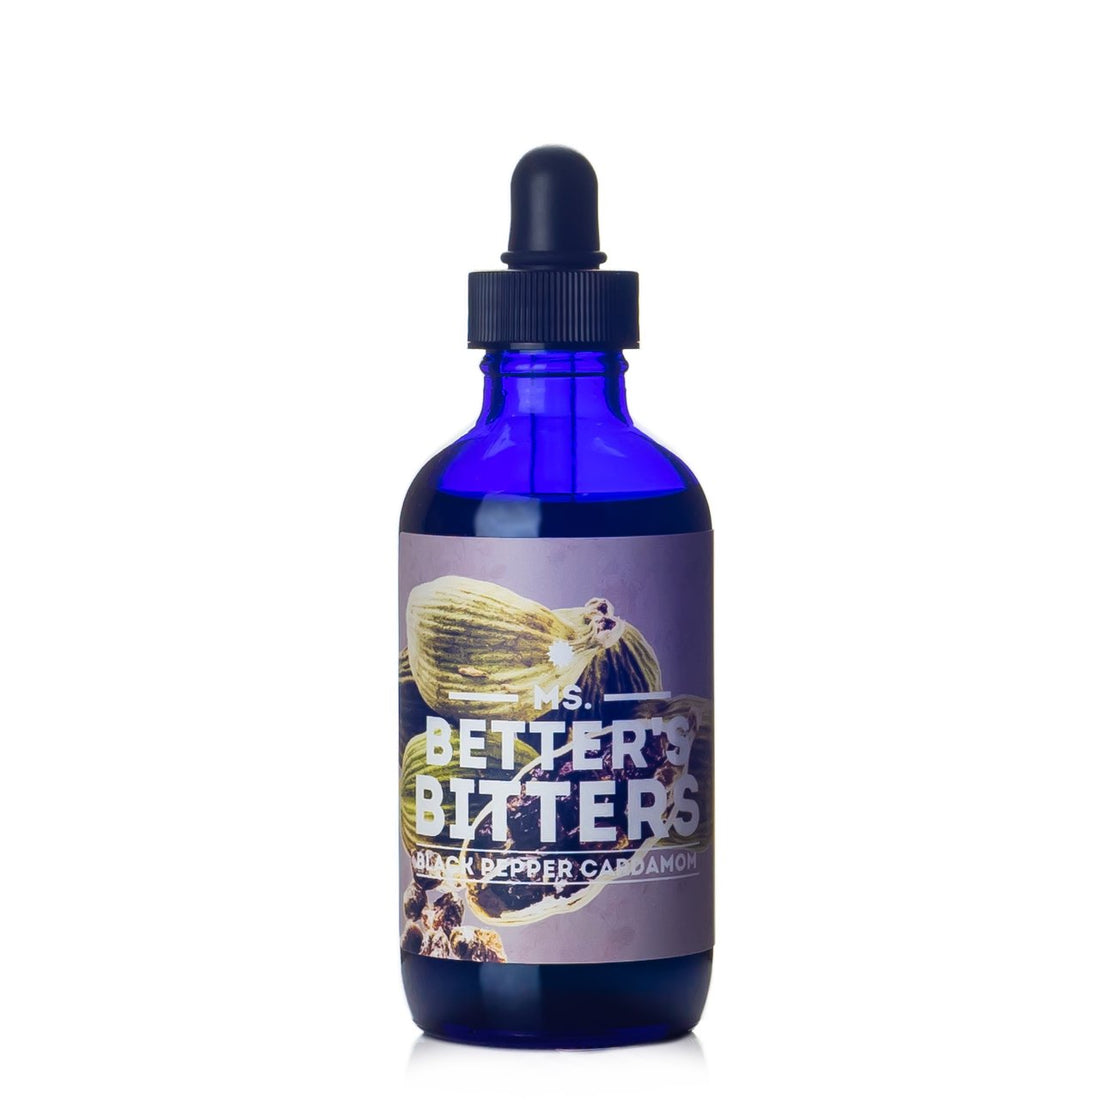 Ms. Better's | Black Pepper Cardamom Bitters